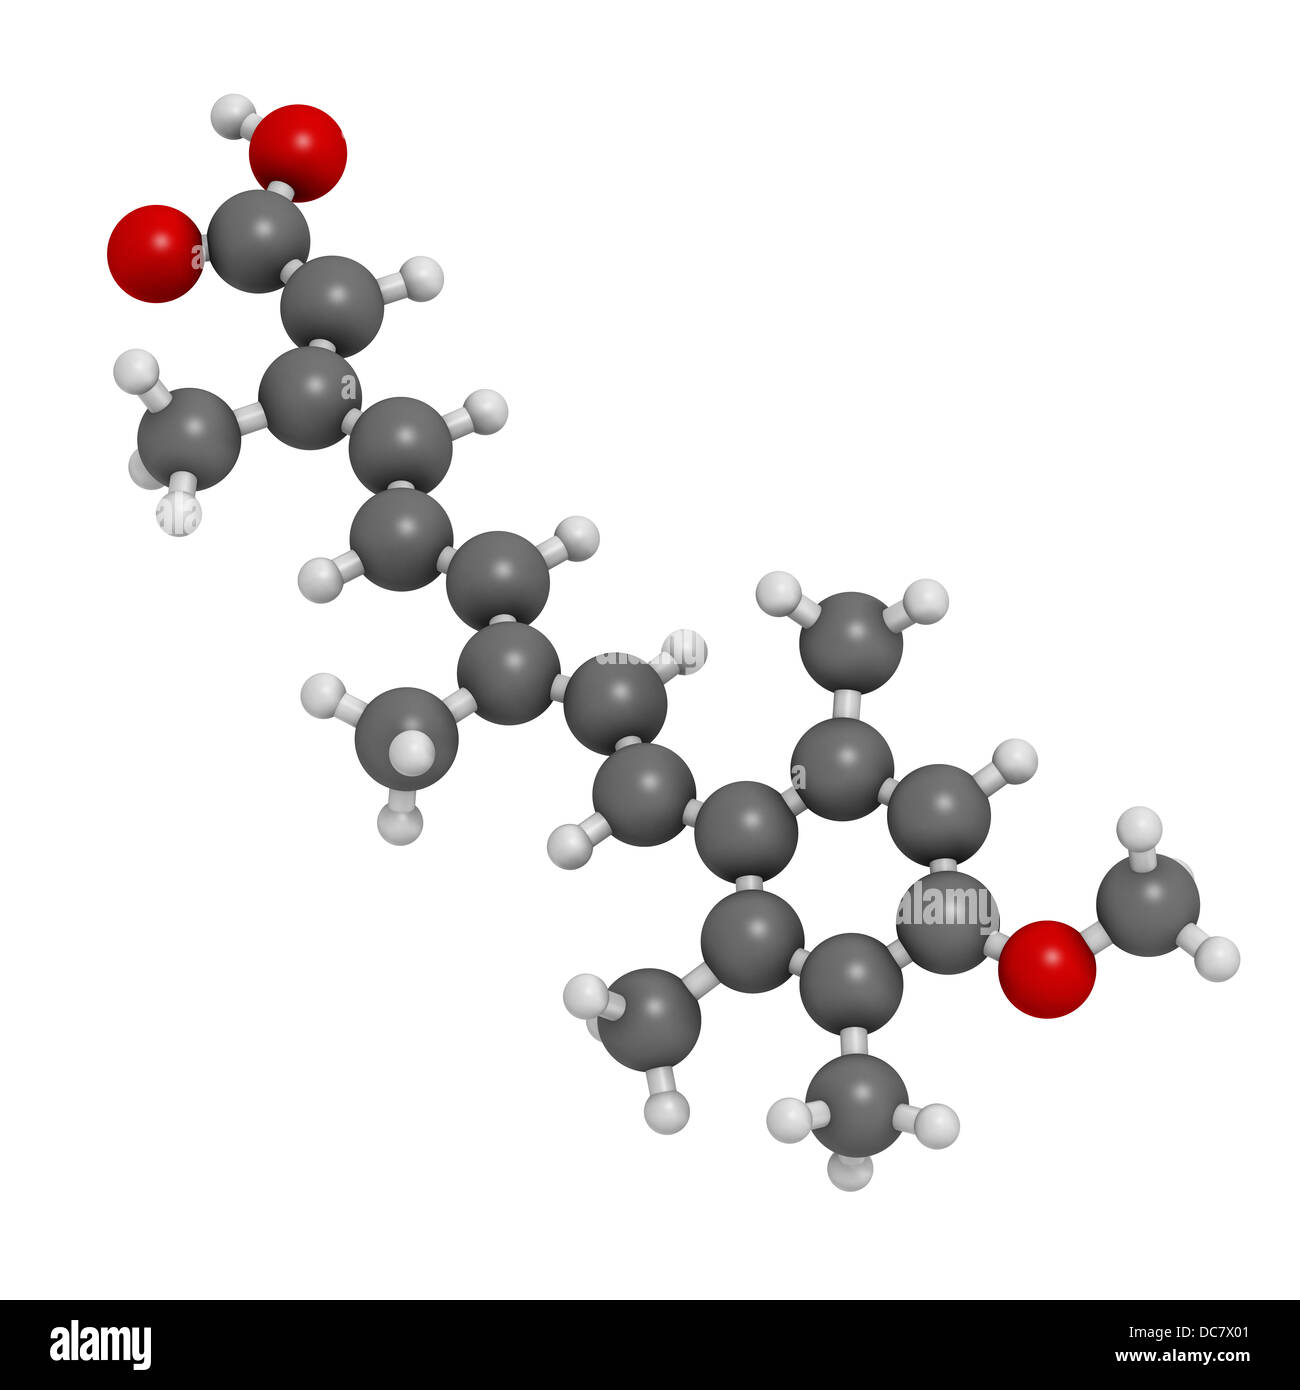 Acitretin Psoriasis Droge, chemische Struktur. Atome werden als Kugeln mit konventionellen Farbkodierung dargestellt. Stockfoto